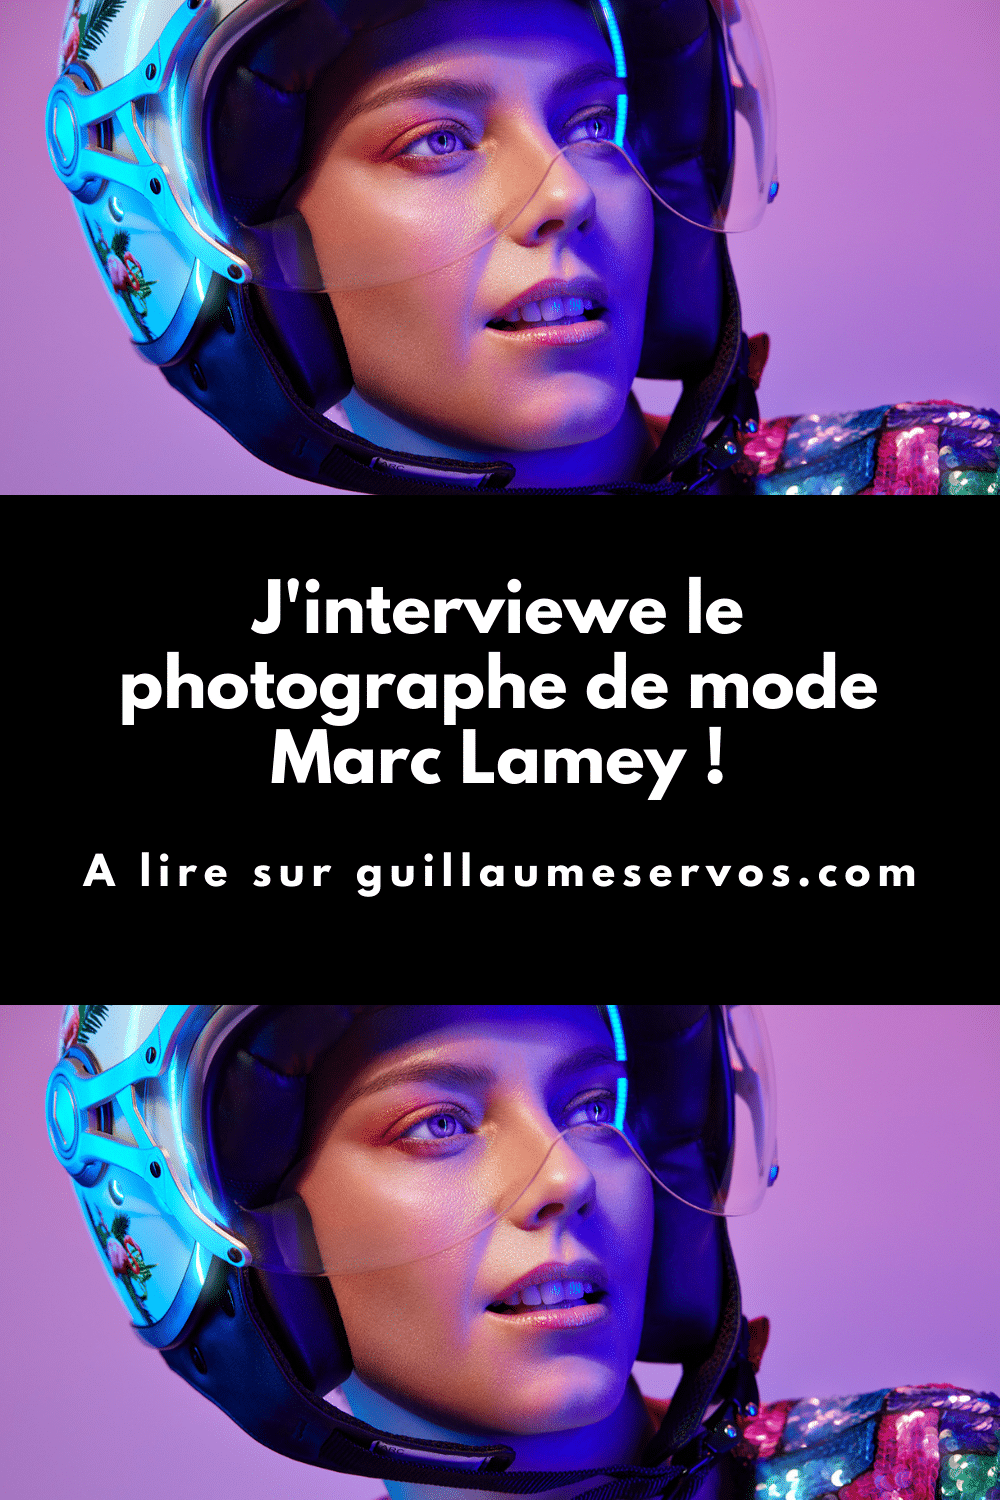 Découvre mon interview avec Marc Lamey, photographe qui aime le portrait et la mode. Son rapport à la photographie, aux réseaux sociaux et au voyage.